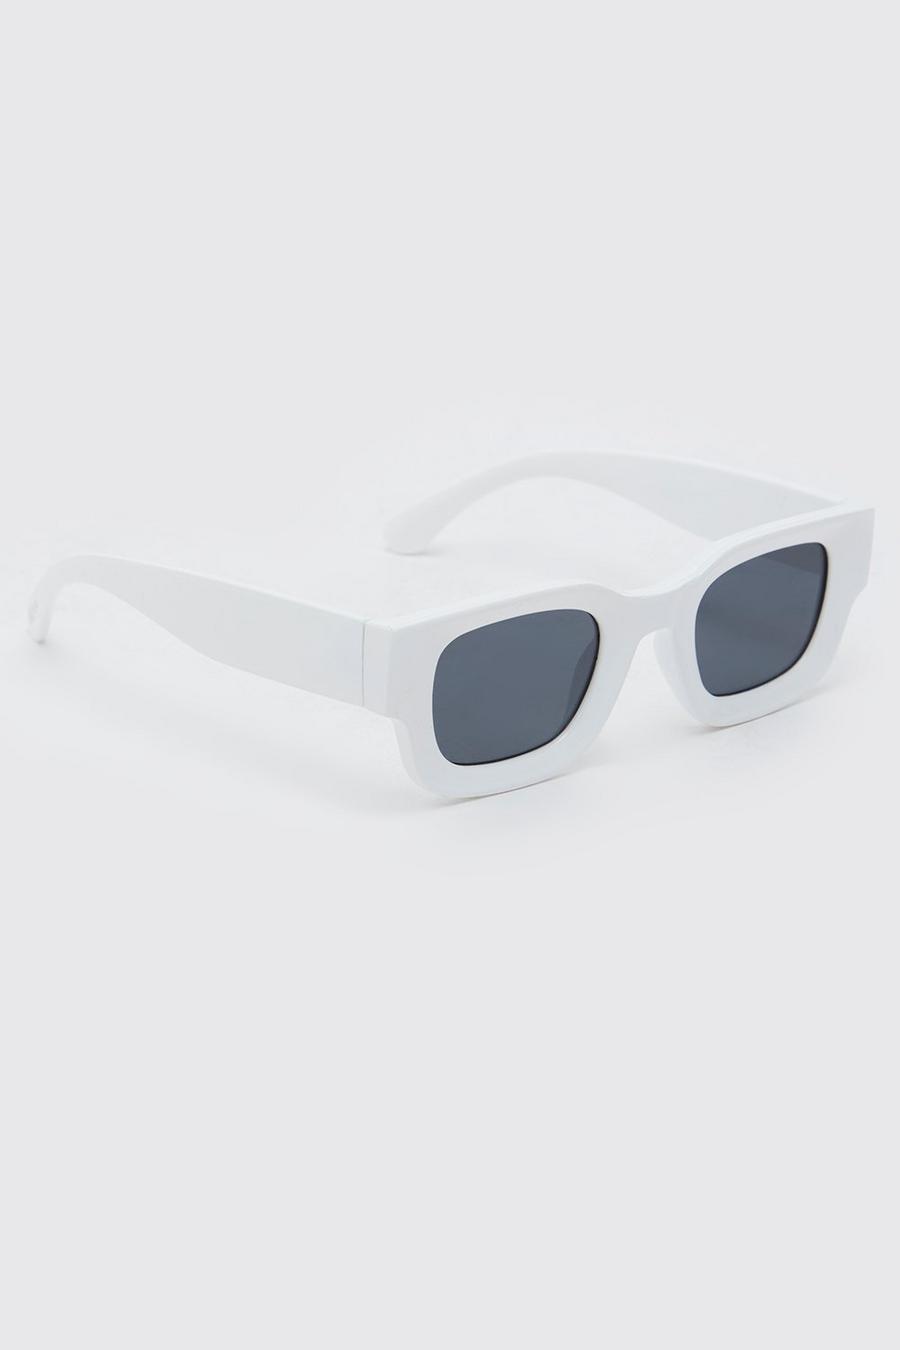 Gafas de sol recicladas Wayfarer de plástico gruesas, White blanco image number 1